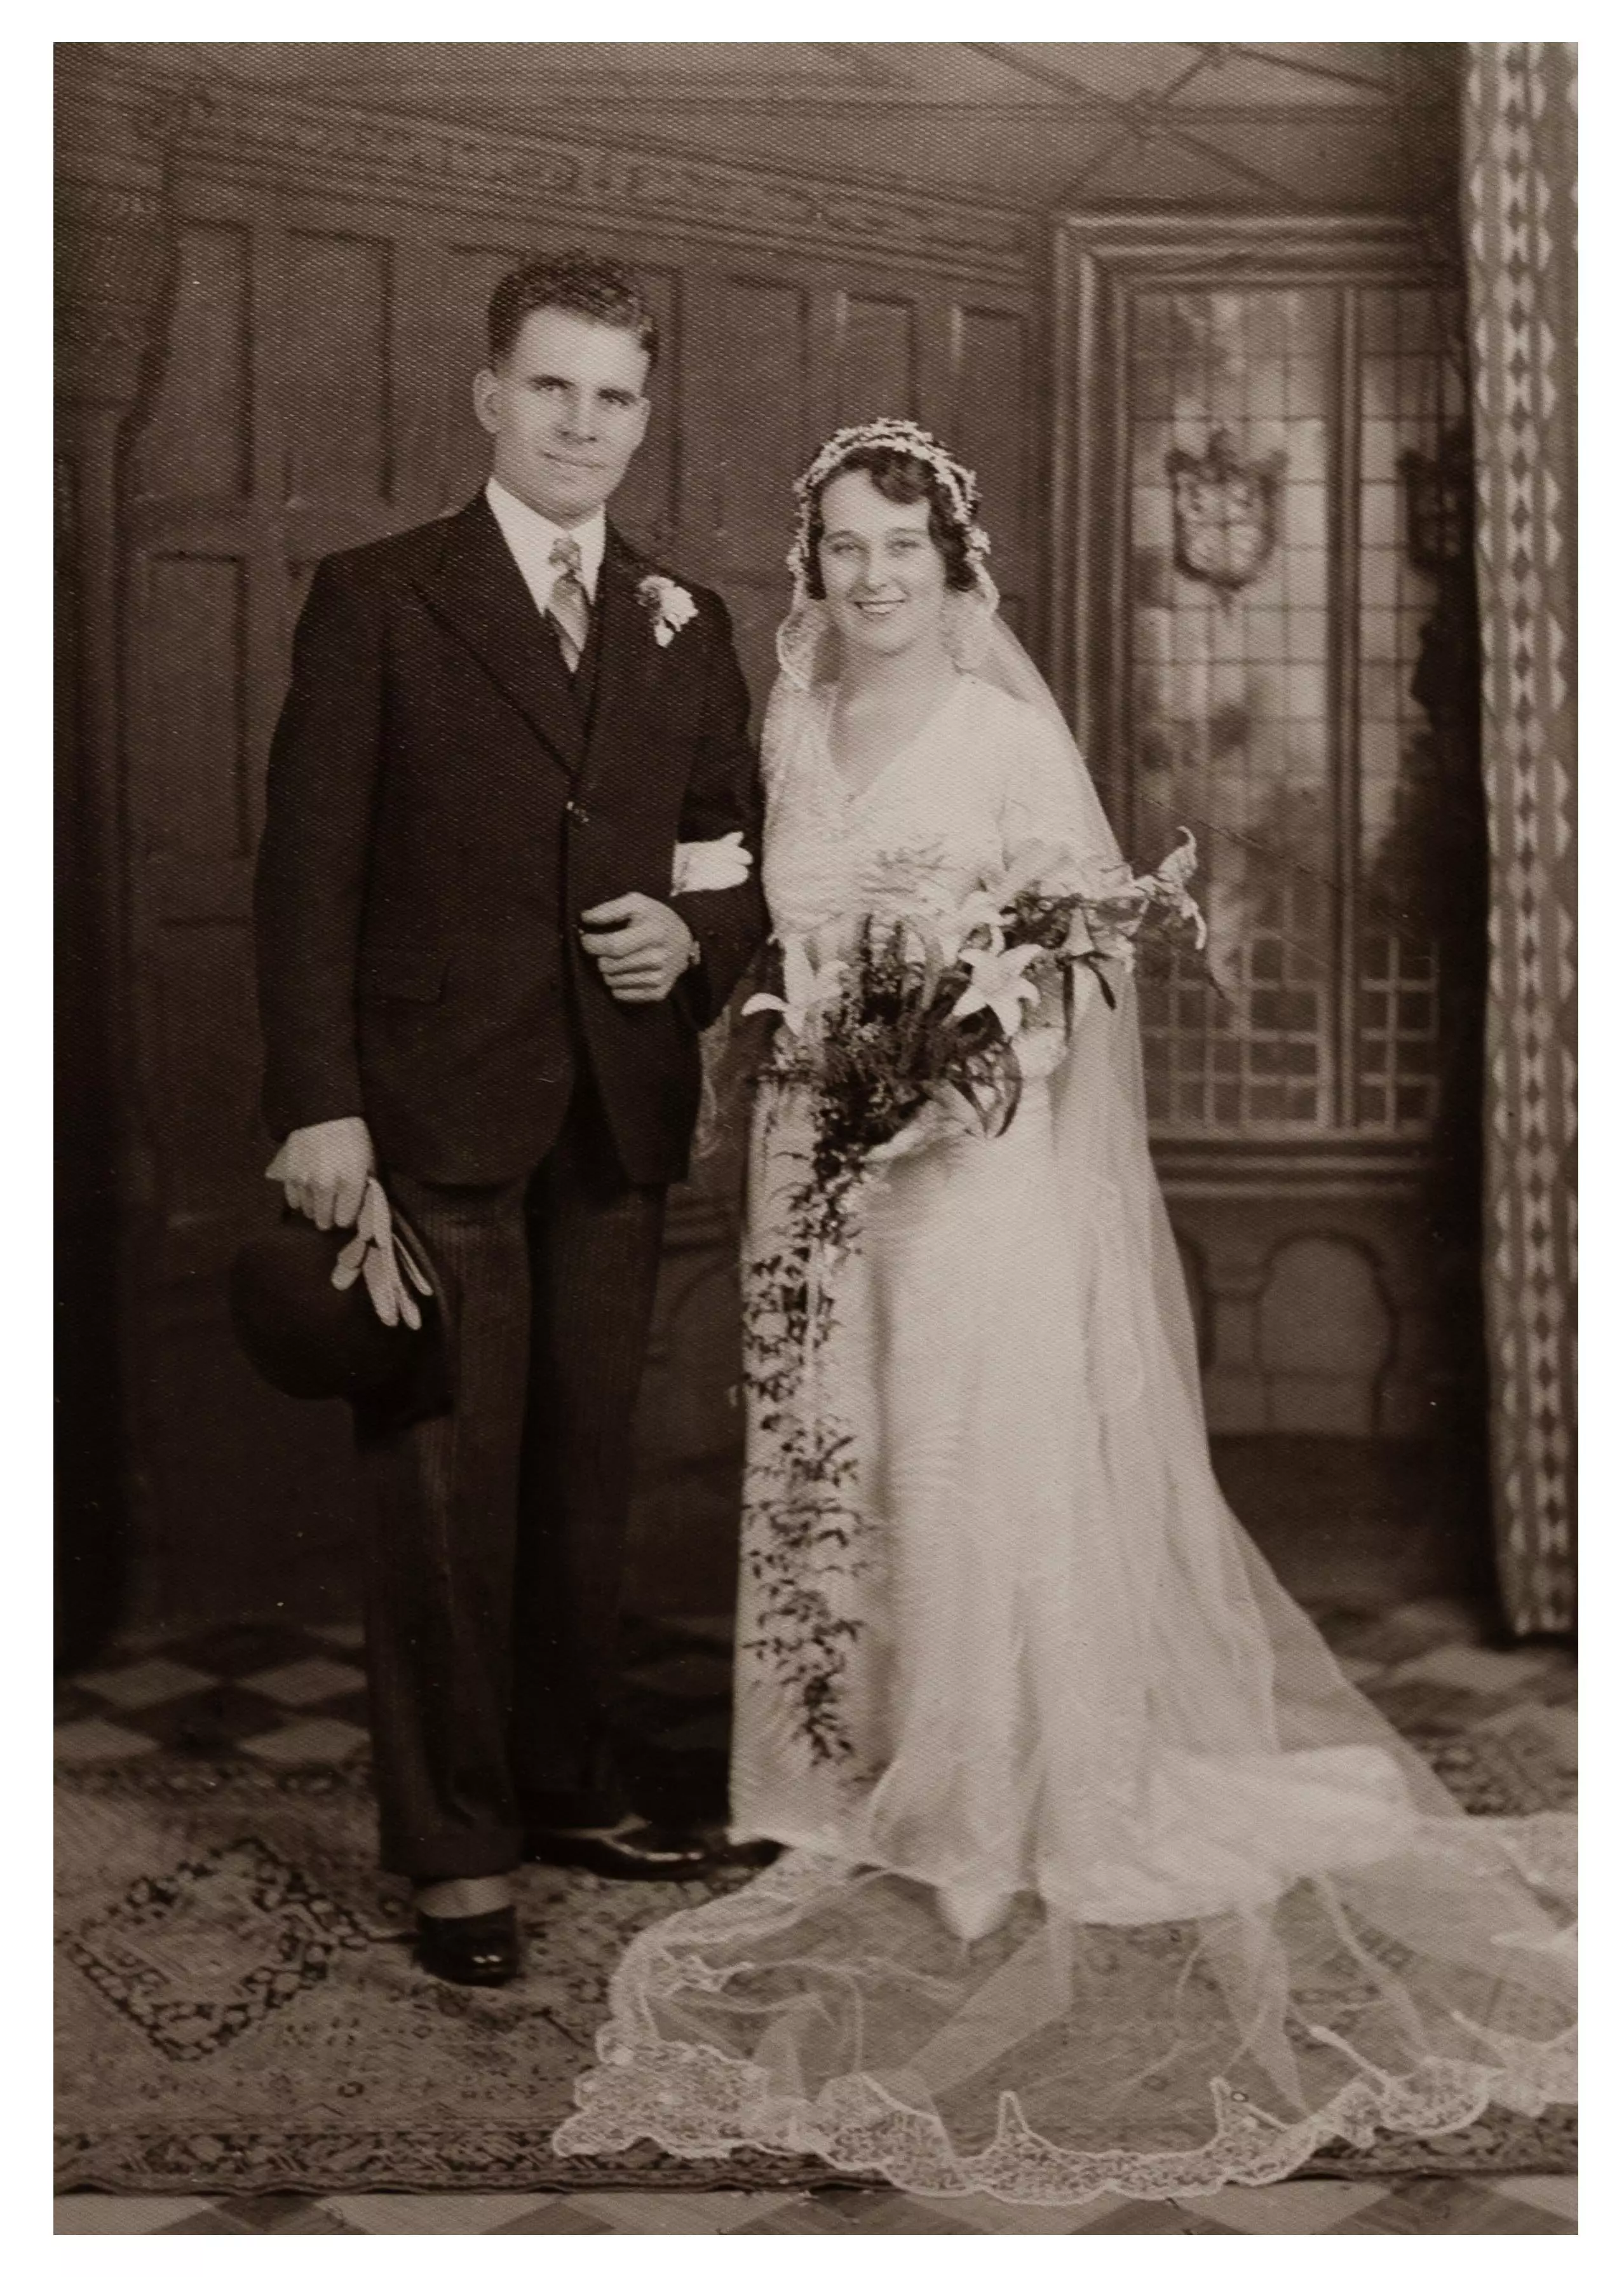 Mrs Jones married her husband in 1933.